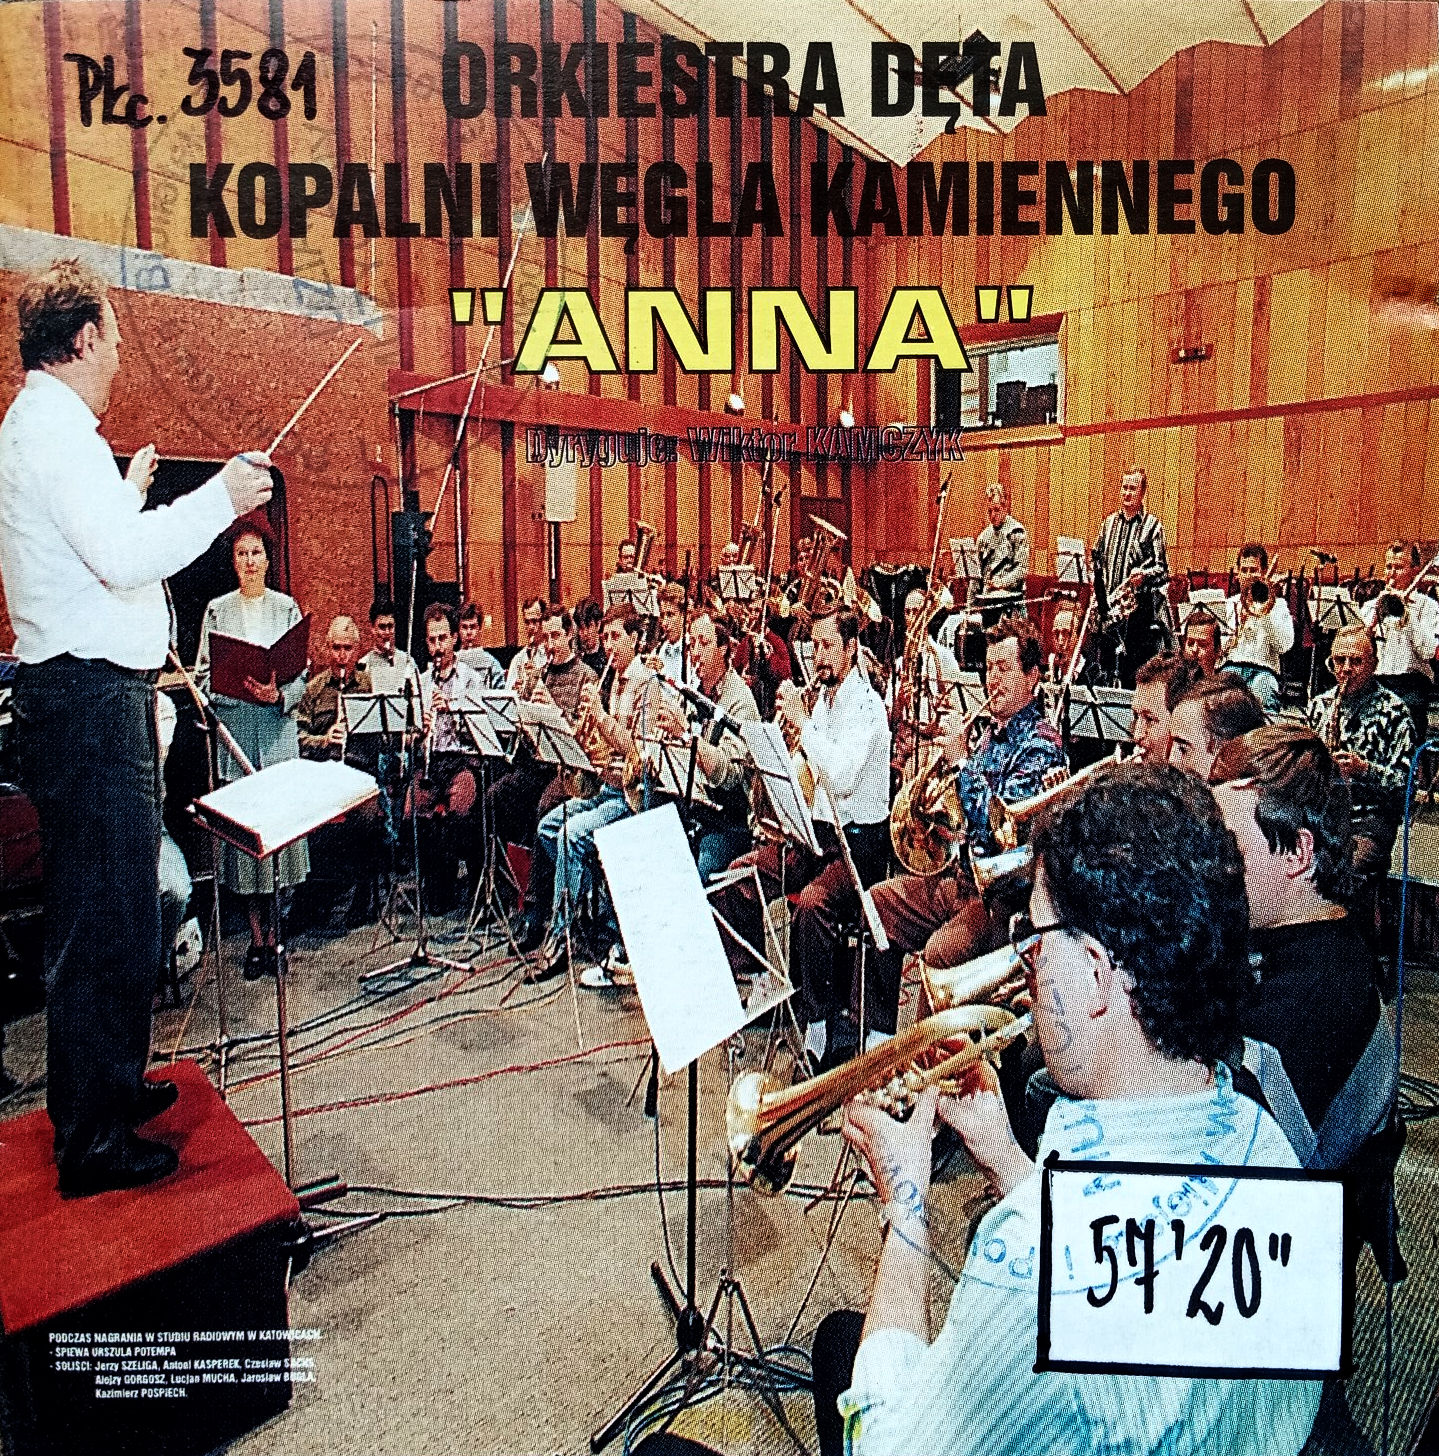 ORKIESTRA DĘTA KWK “Anna” – Orkiestra Dęta KWK “Anna”